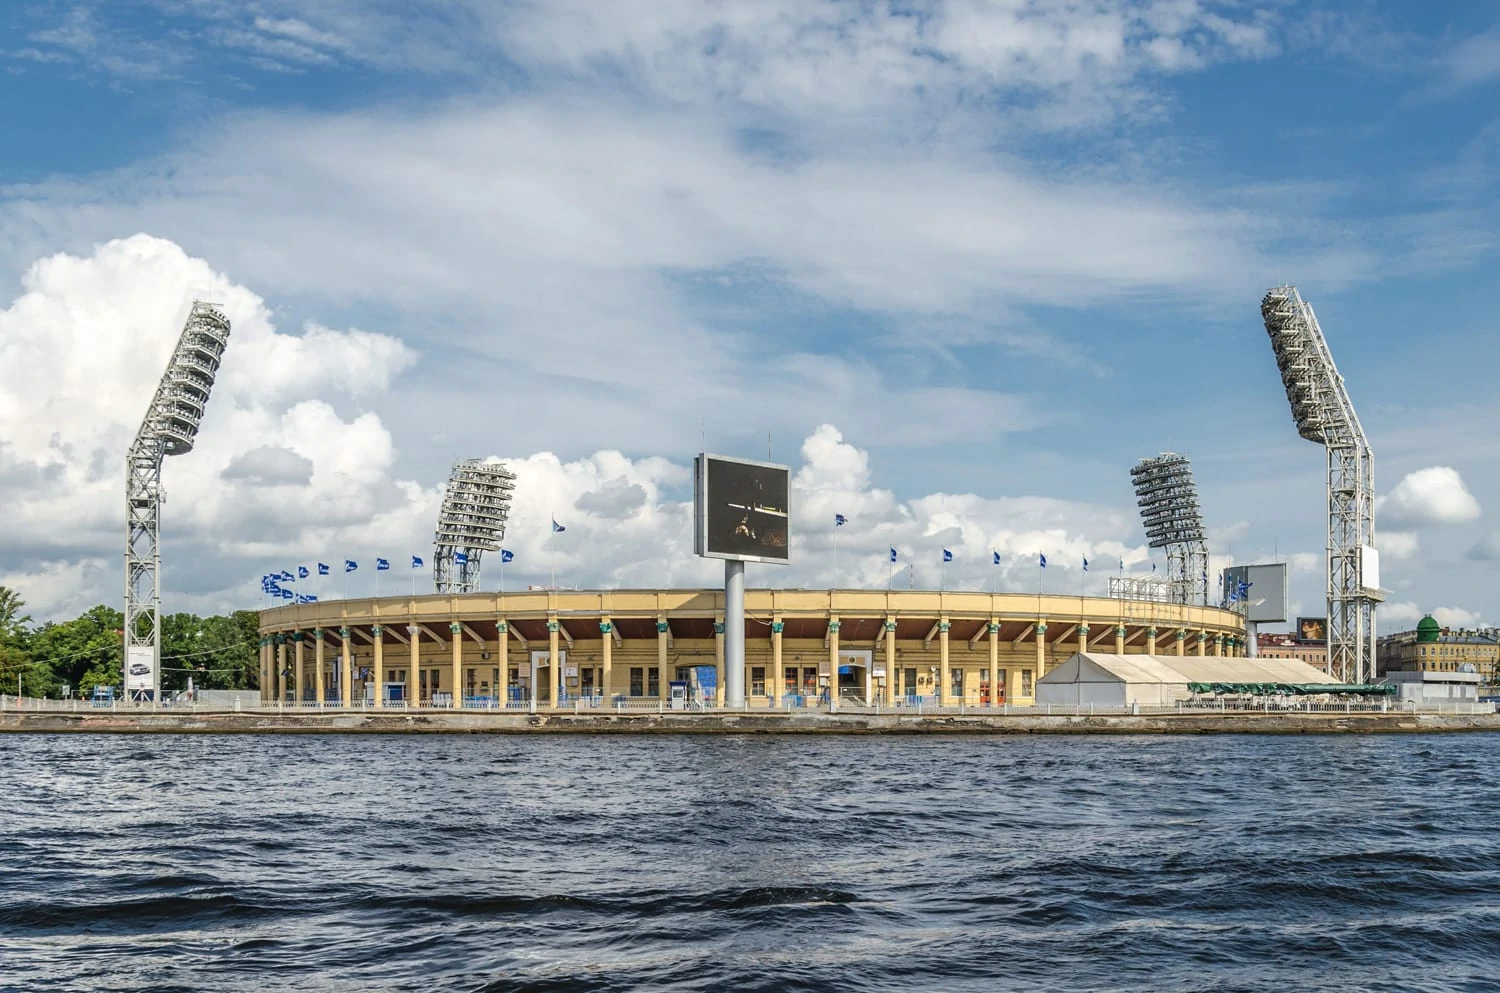 Weit entfernte Aufnahme des Fussballstadions in St. Petersburg